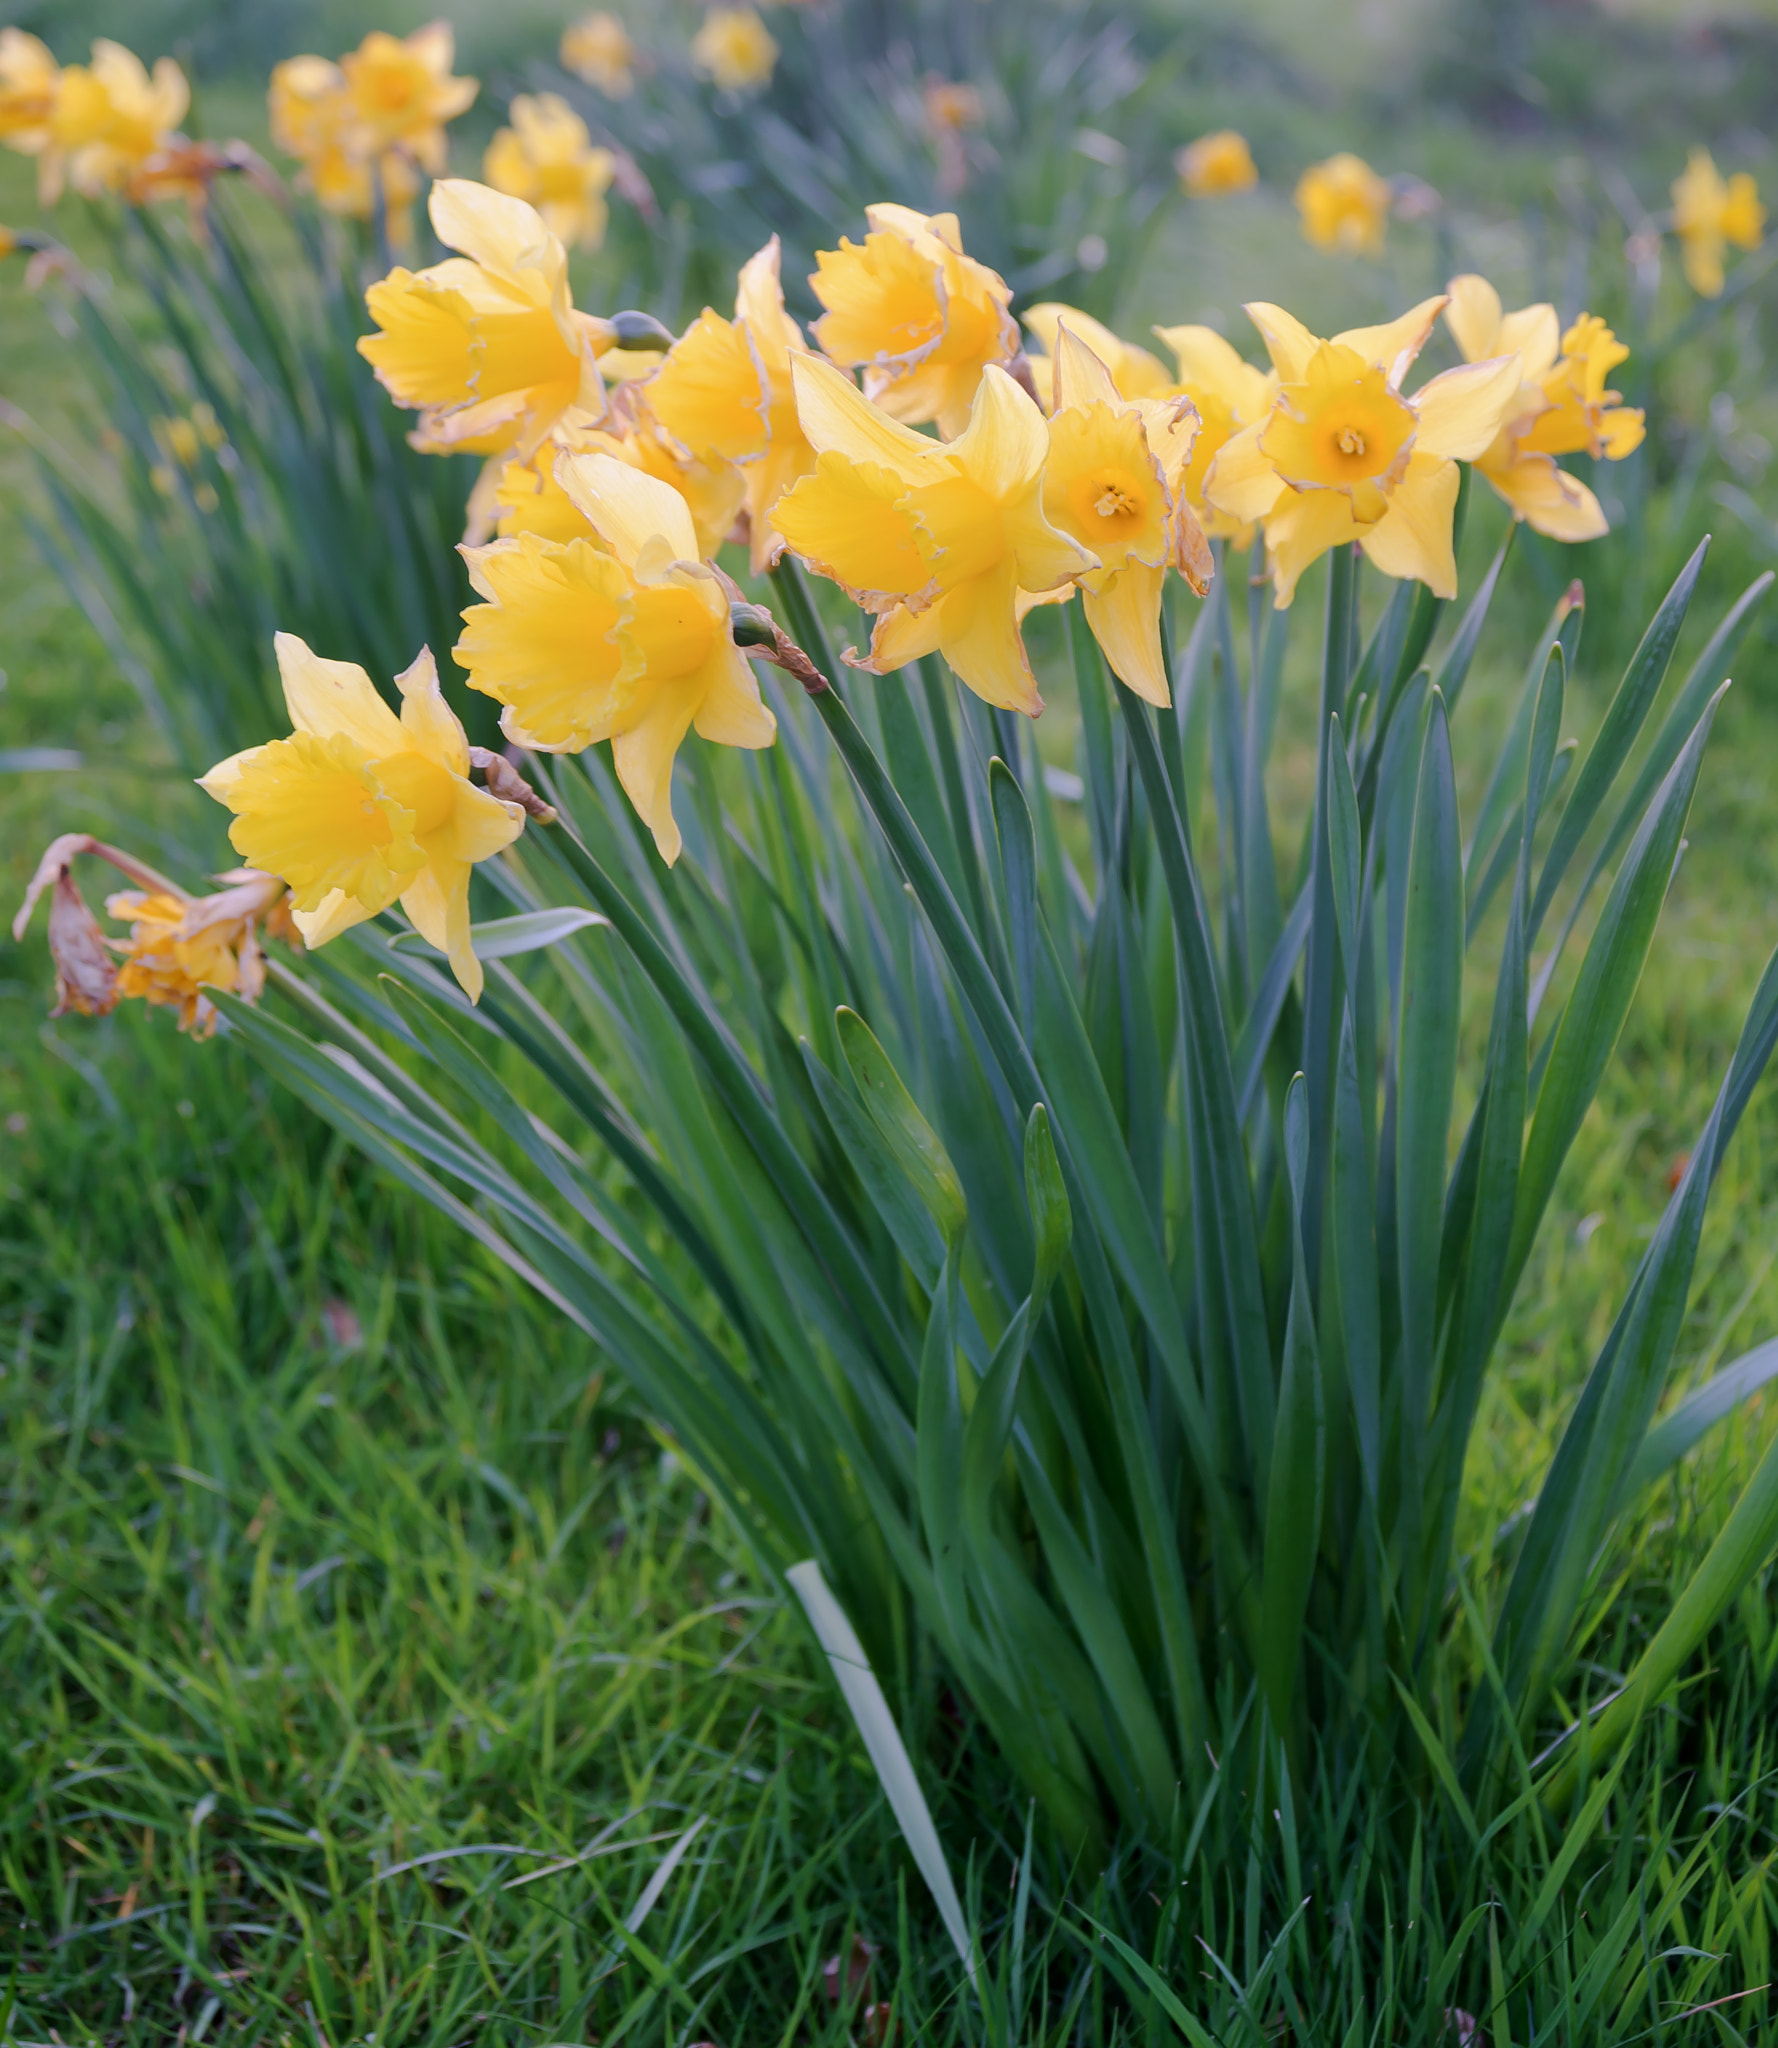 Nikon D3 + AF Zoom-Nikkor 28-80mm f/3.3-5.6G sample photo. Spring daffodils photography